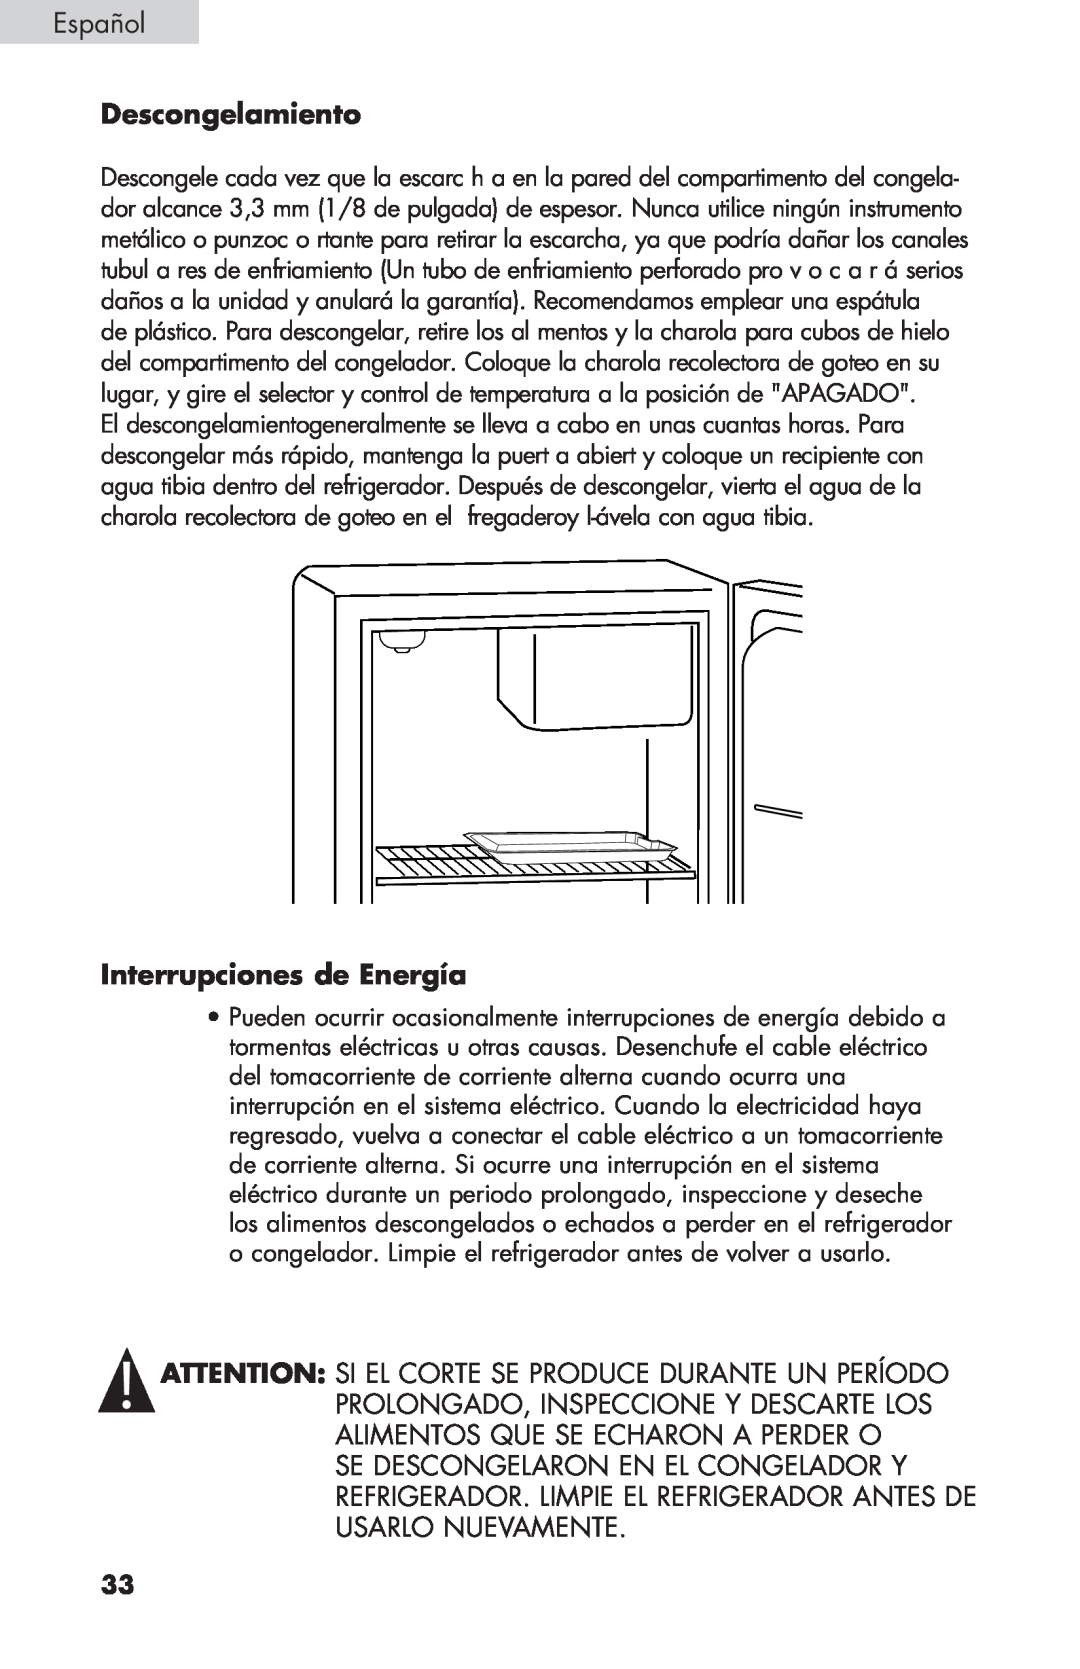 Haier BCF27B manual Descongelamiento, Interrupciones de Energía, Español 